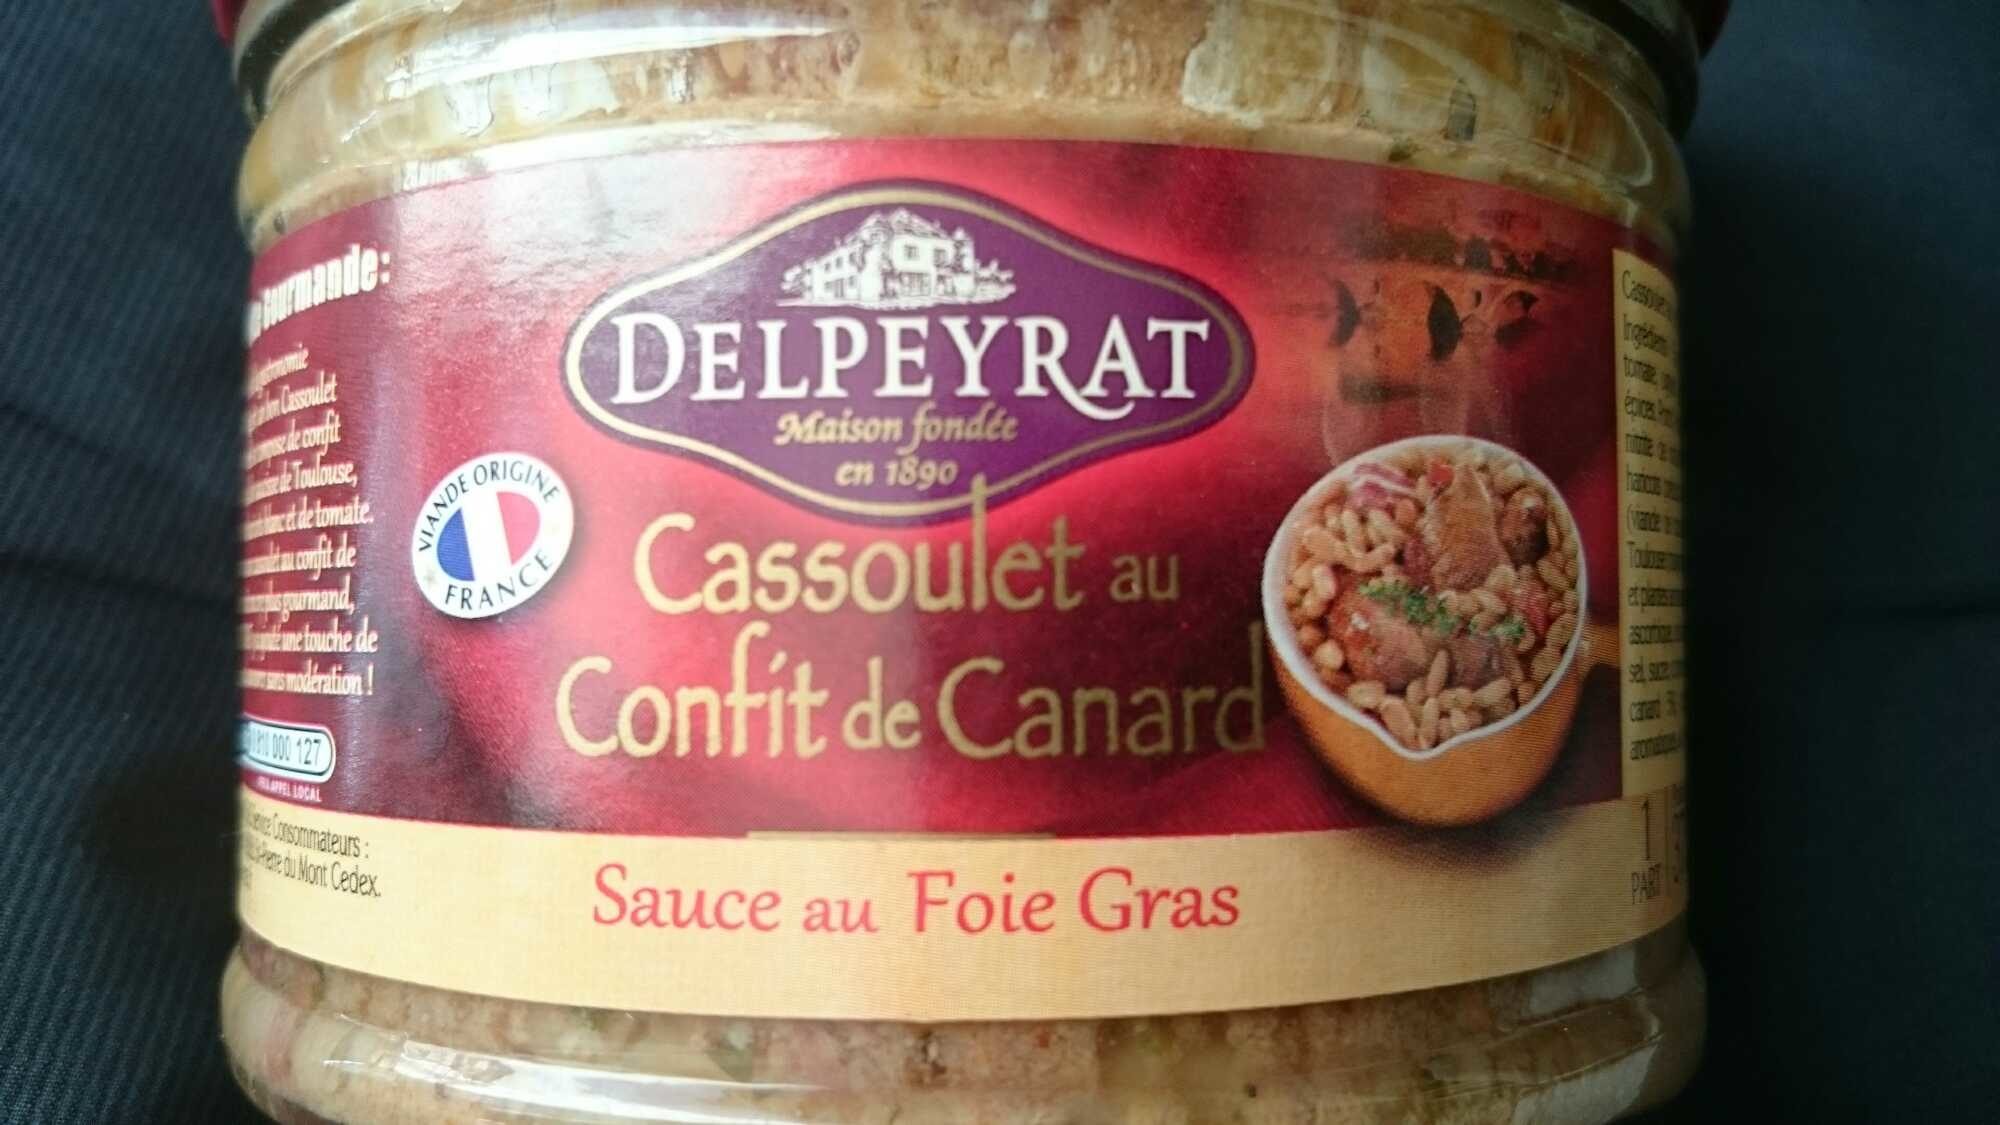 Cassoulet au Confit de Canard - sauce au Foie Gras - Product - fr